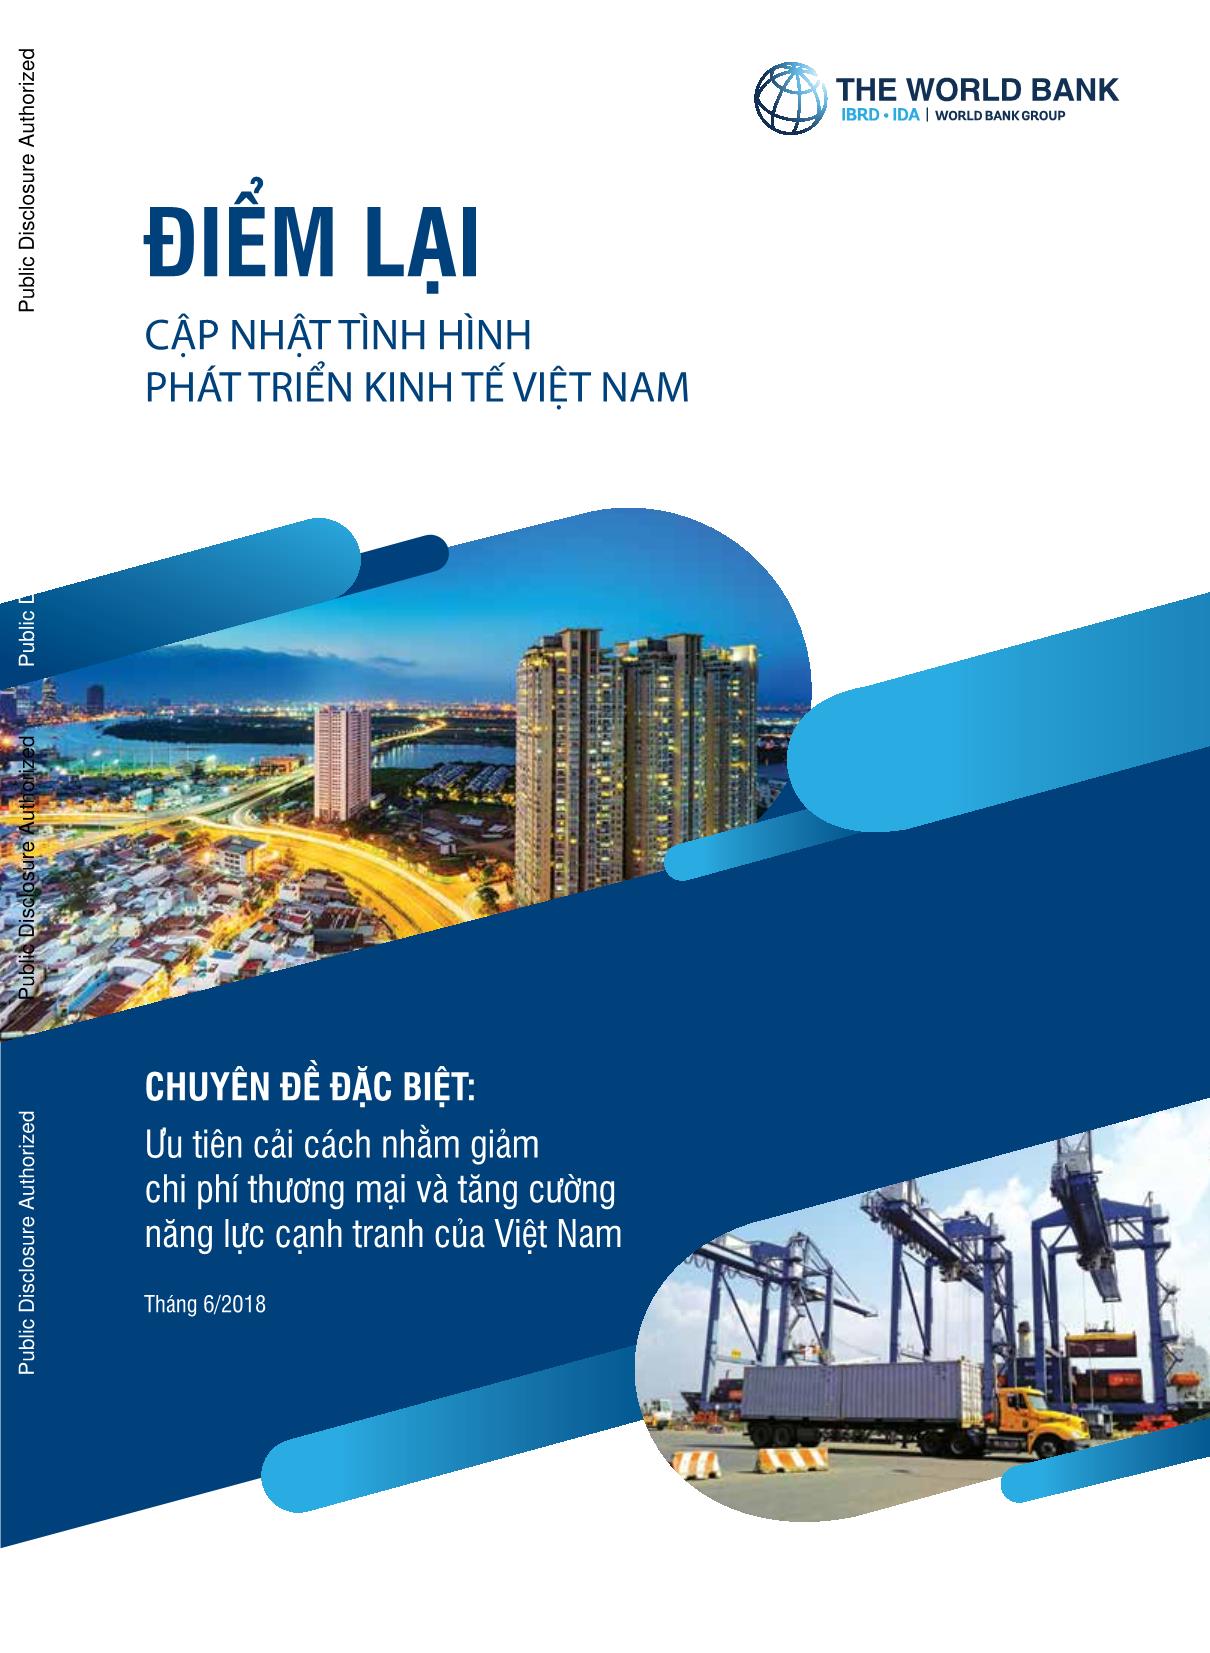 Điểm lại cập nhật tình hình phát triển kinh tế Việt Nam trang 1